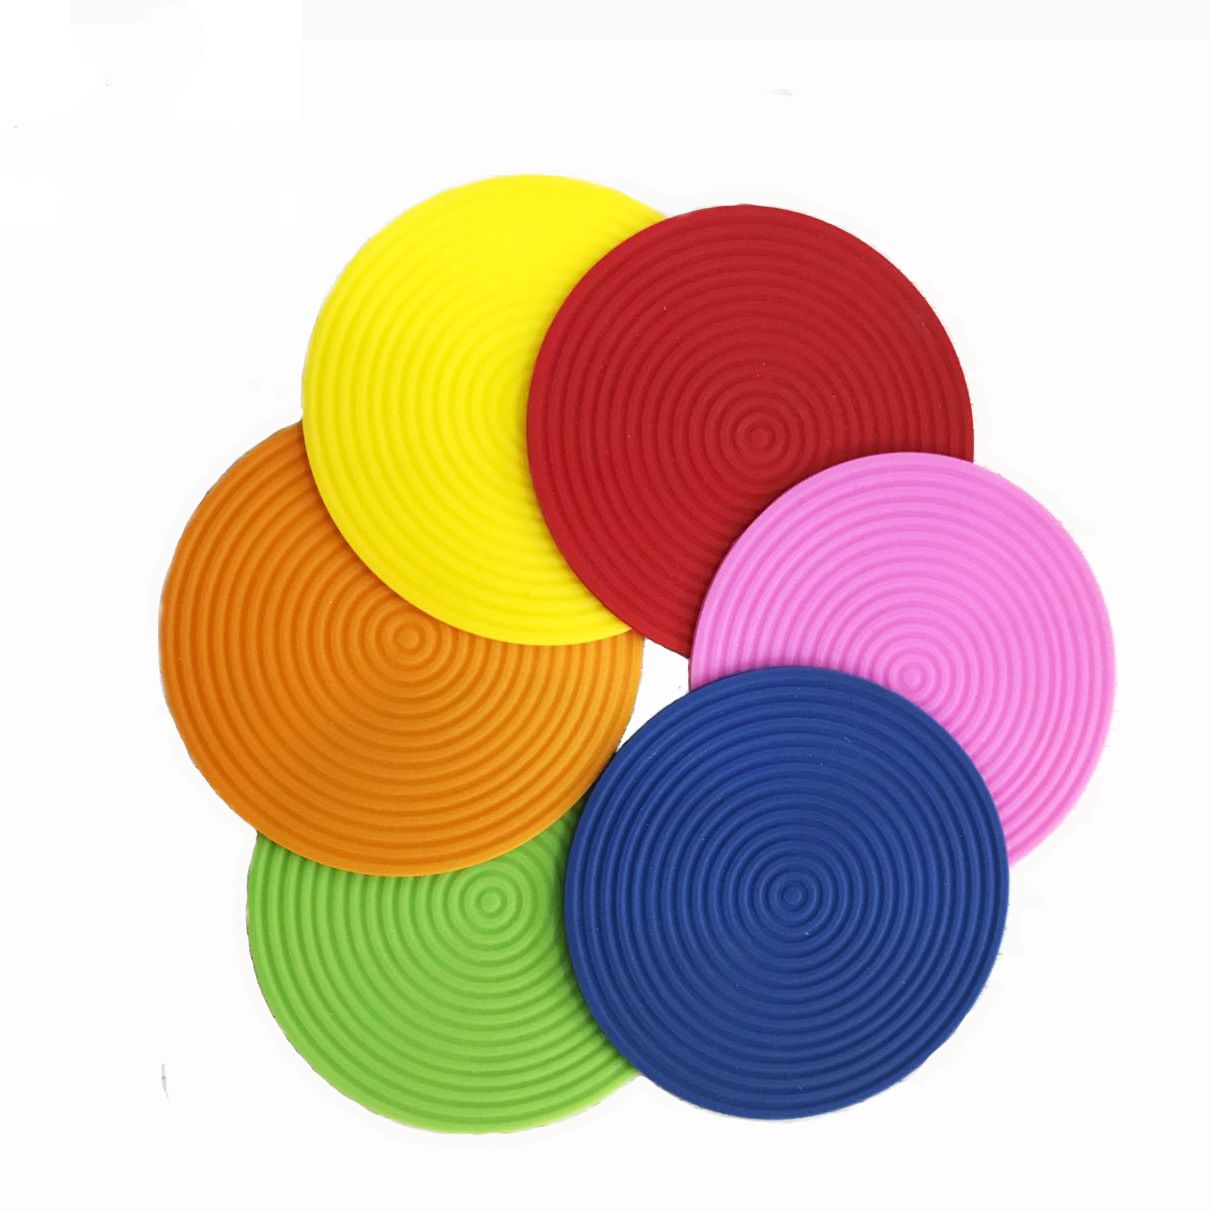 Customized Design Silicone Rubber Round Coaster